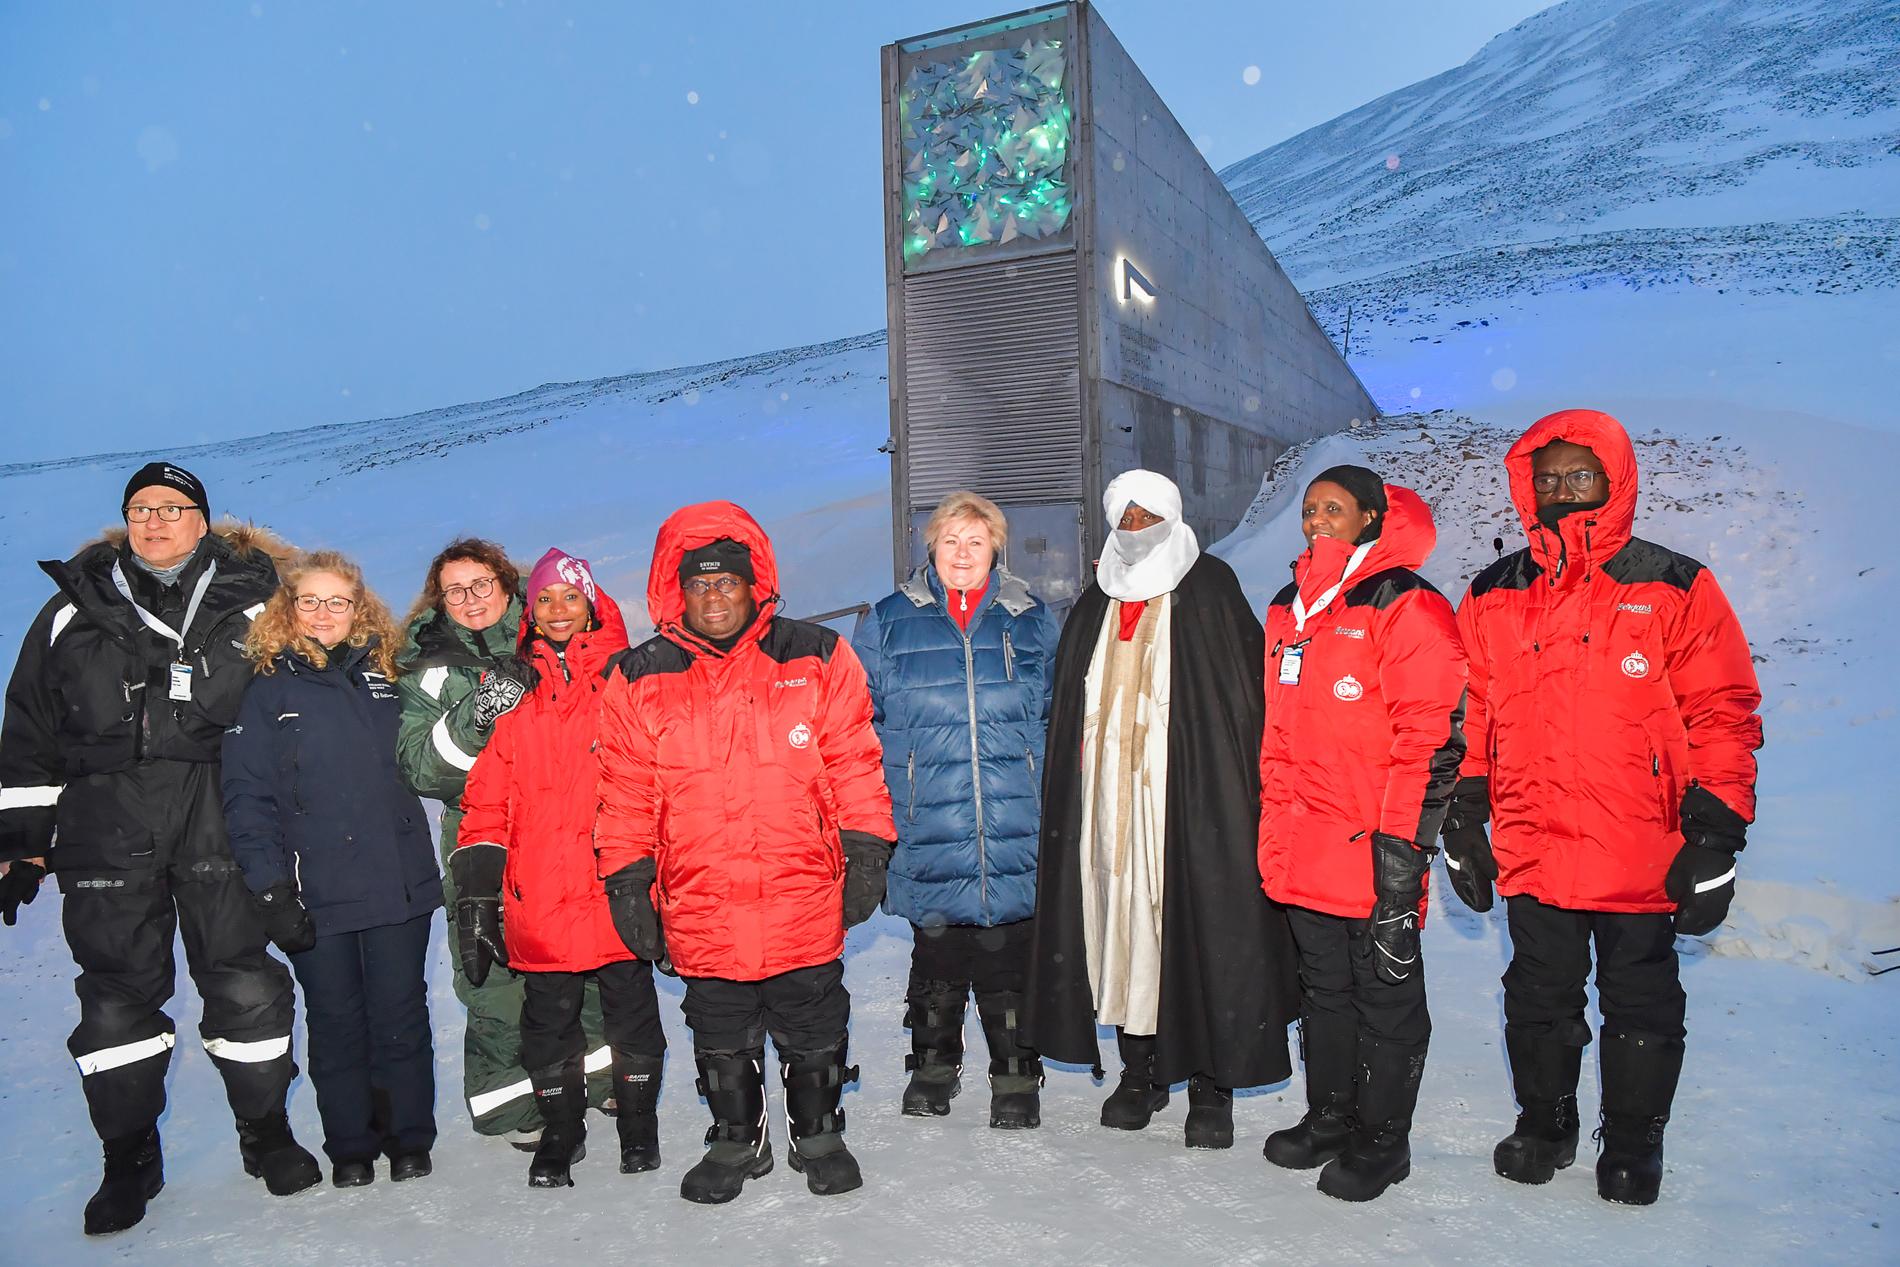 Norges statsminister Erna Solberg med bland andra Ghanas president Nana Akufu-Addo till vänster samt andra representanter från SDG-gruppen som jobbar för FN:s globala mål för hållbar utveckling vid tisdagskvällens frödeponeringsceremoni vid Svalbards globala frövalv i Longyearbyen.